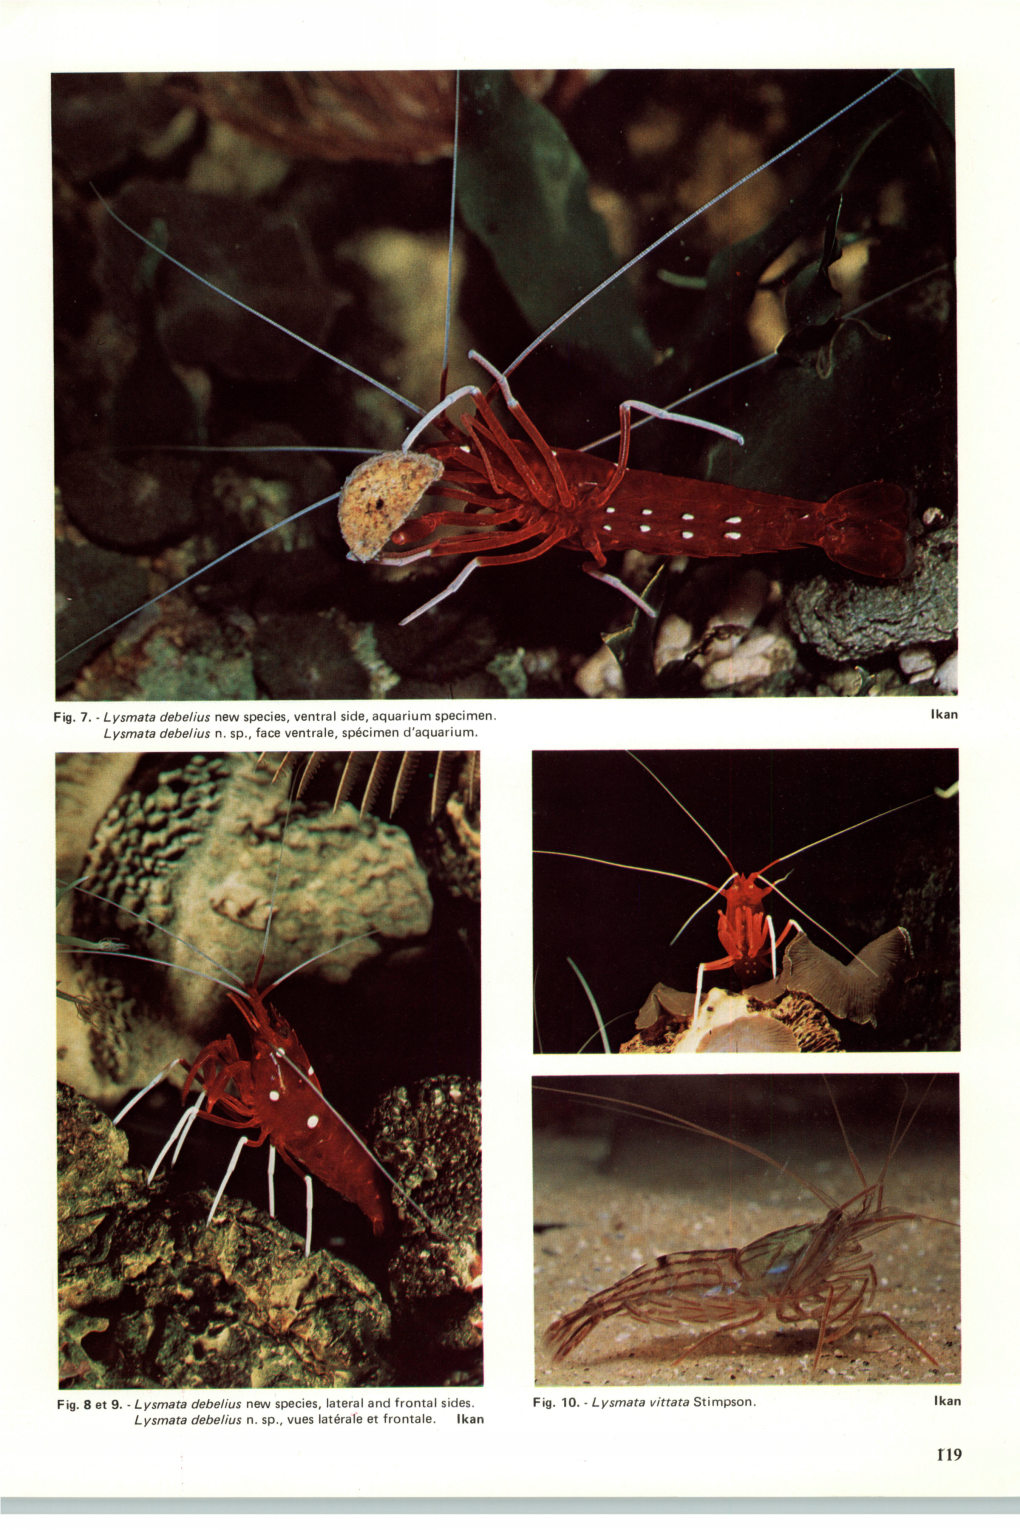 Fig. 7. - Lysmata Debelius New Species, Ventral Side, Aquarium Specimen